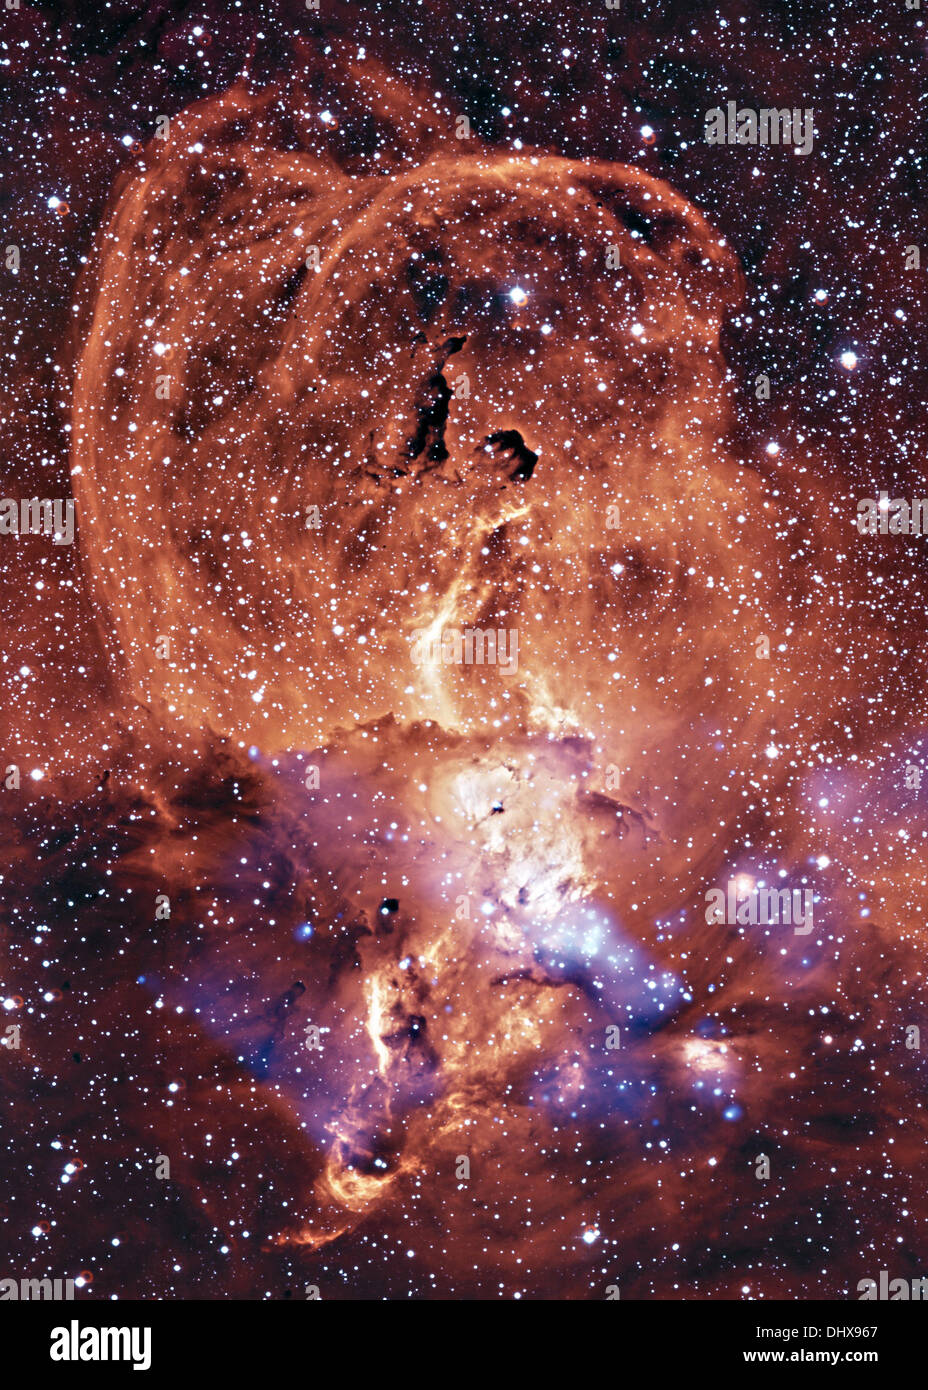 Chandra space telescope visualizza una regione di gas incandescenti in Sagittario braccio della Via Lattea conosciuta come NGC 3576 situato circa 9 mila anni luce dalla Terra. Tali nebulas presente un tableau del dramma della evoluzione di stelle massicce, dalla formazione in vaste nuvole scure, loro relativamente breve vita e la eventuale distruzione in esplosione di supernovae Novembre 15, 2013. Credito: Planetpix/Alamy Live News Foto Stock